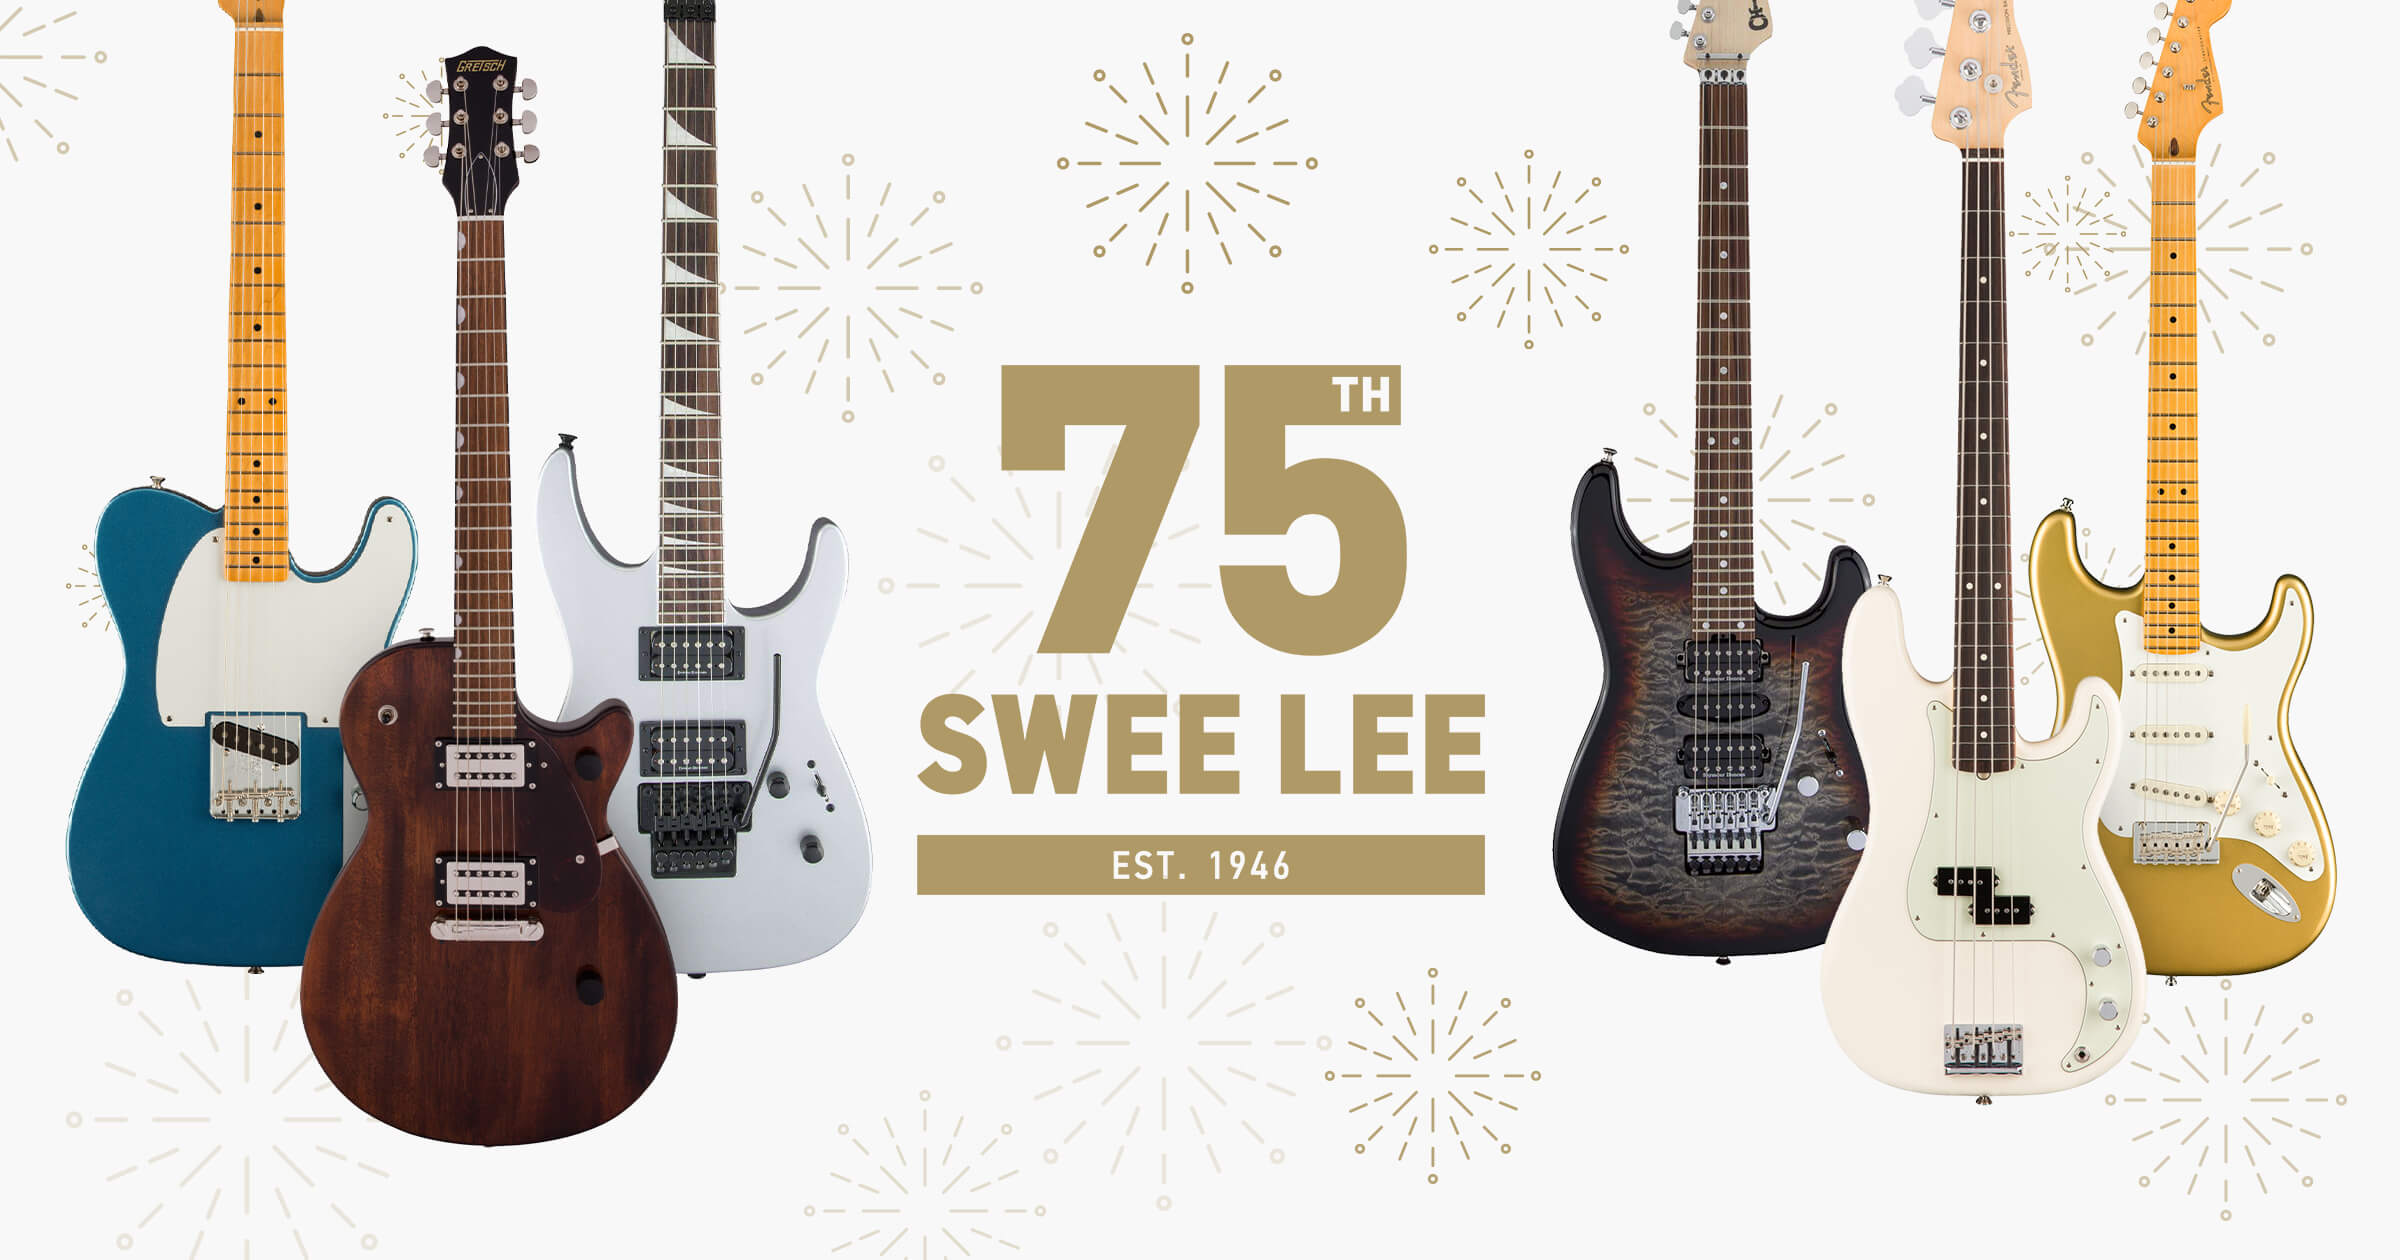 Guitar Electric Tuyển Chọn Cho Bộ Sưu Tập Kỷ Niệm 75 Năm Thành Lập Swee Lee  - Swee Lee Blog